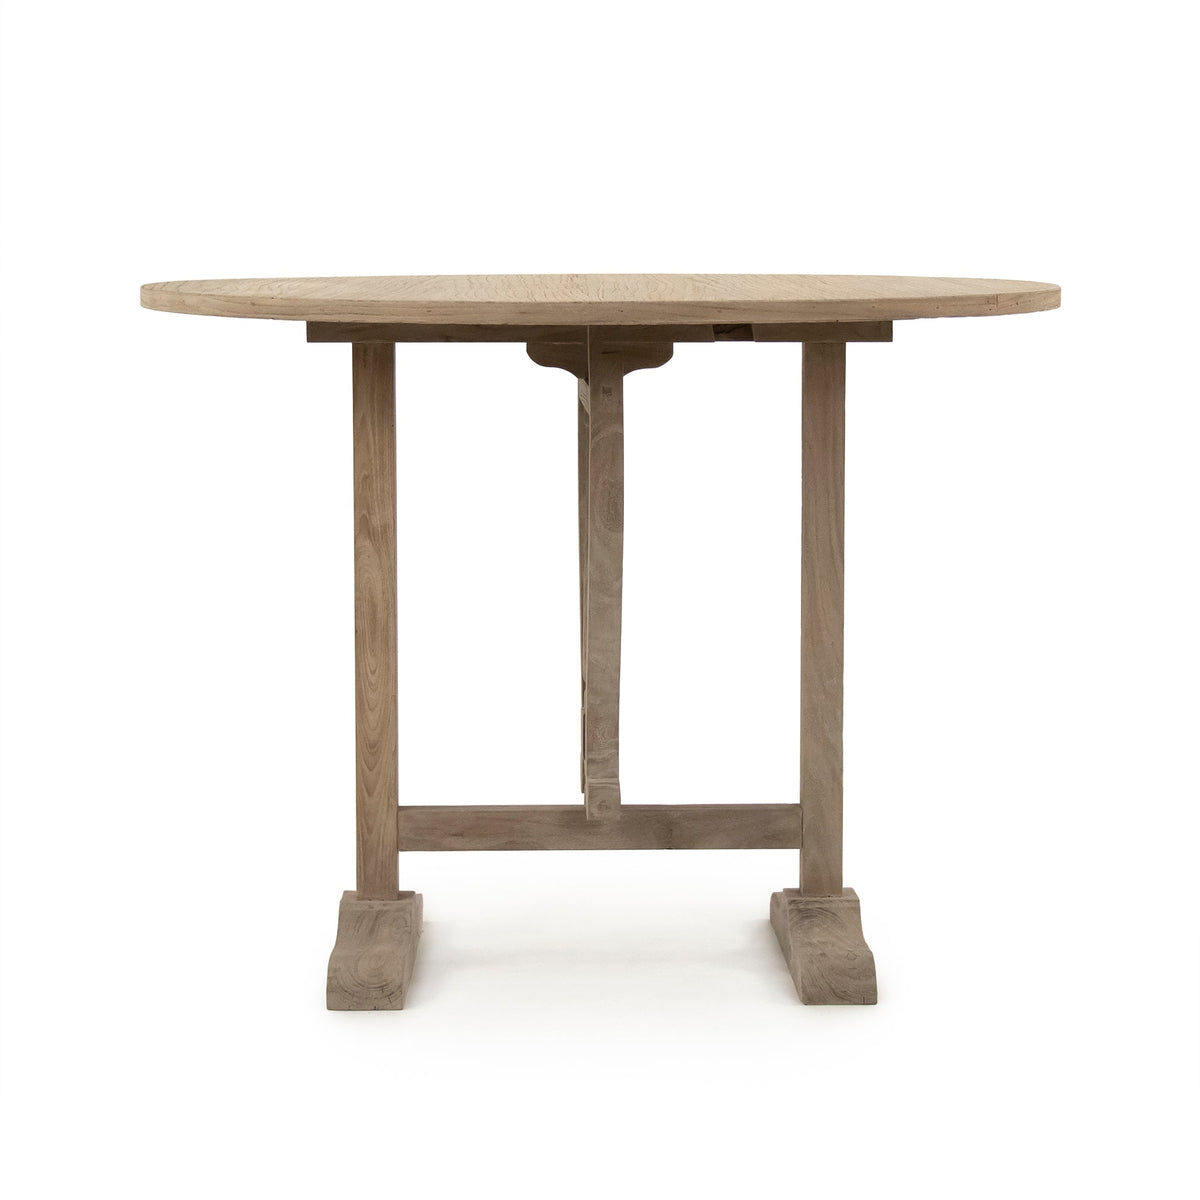 Laurel Table by Zentique